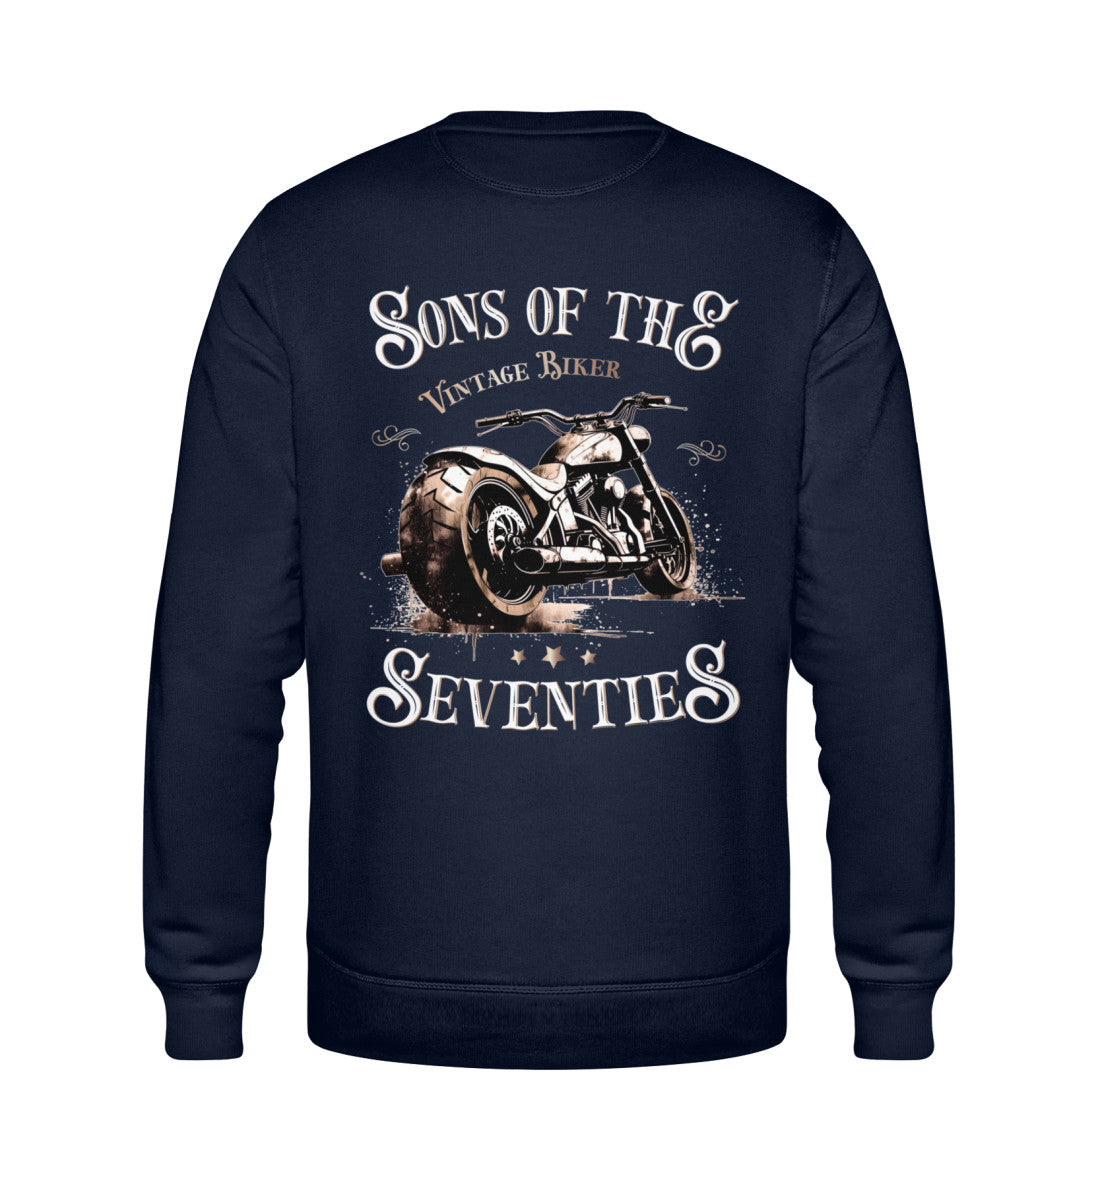 Ein Sweatshirt für Motorradfahrer von Wingbikers mit dem Aufdruck, Sons of the Seventies - Vintage Biker, als Back Print, in navy blau.